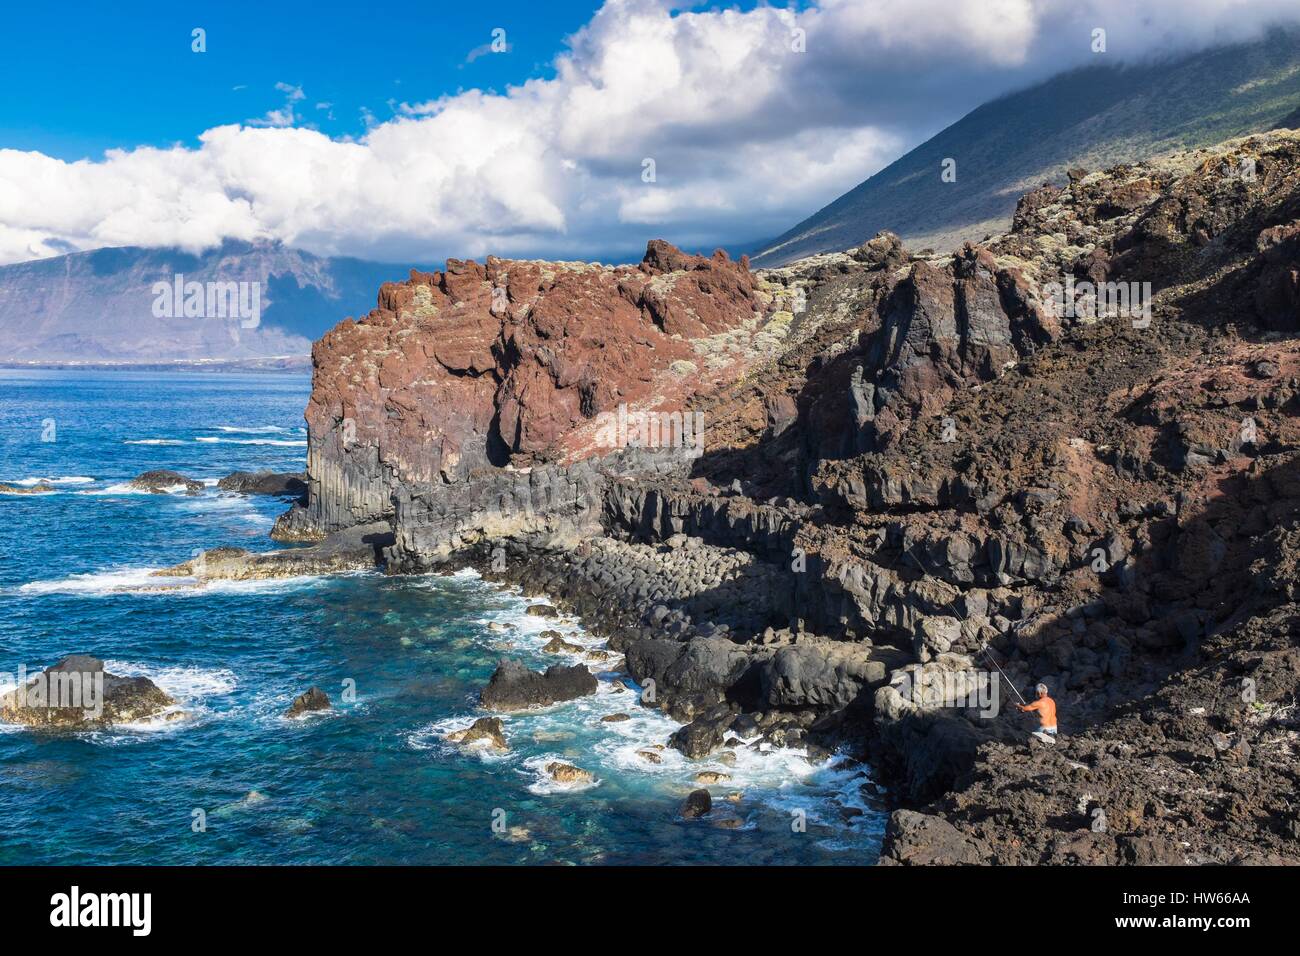 Espagne Îles Canaries El Hierro island a déclaré Réserve de biosphère par l'UNESCO Pozo de la Salud bien connu pour ses eaux thermales Banque D'Images